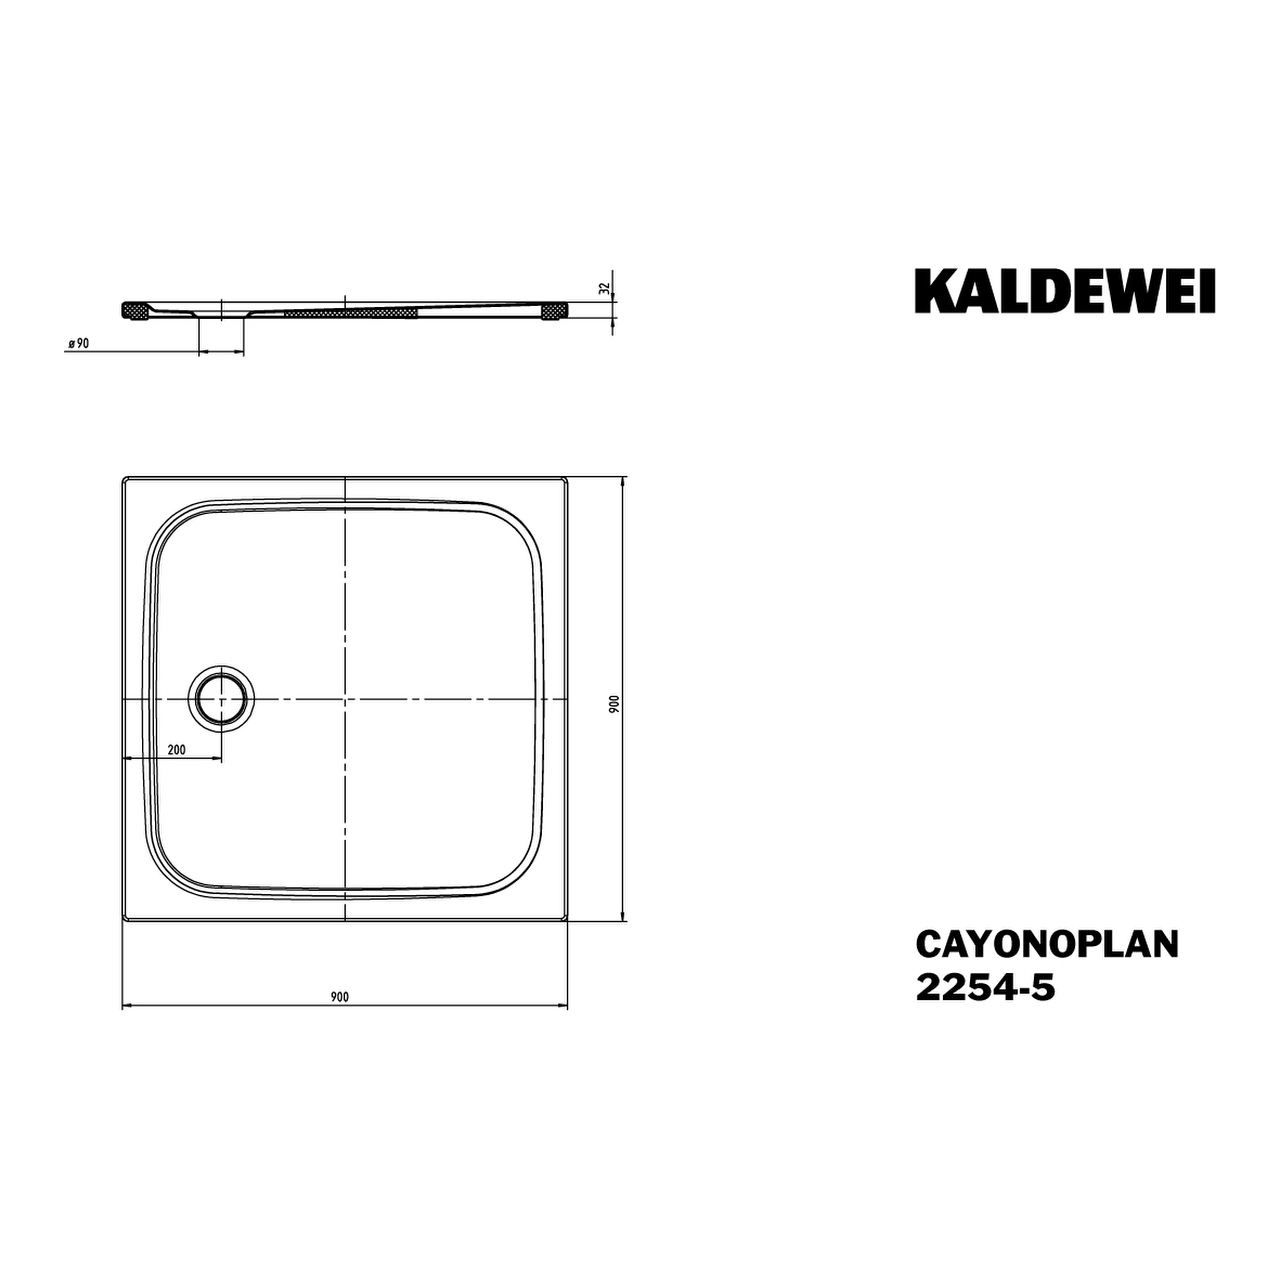 Kaldewei quadrat Duschwanne „Cayonoplan“ 90 × 90 cm in bahamabeige mit Antislip